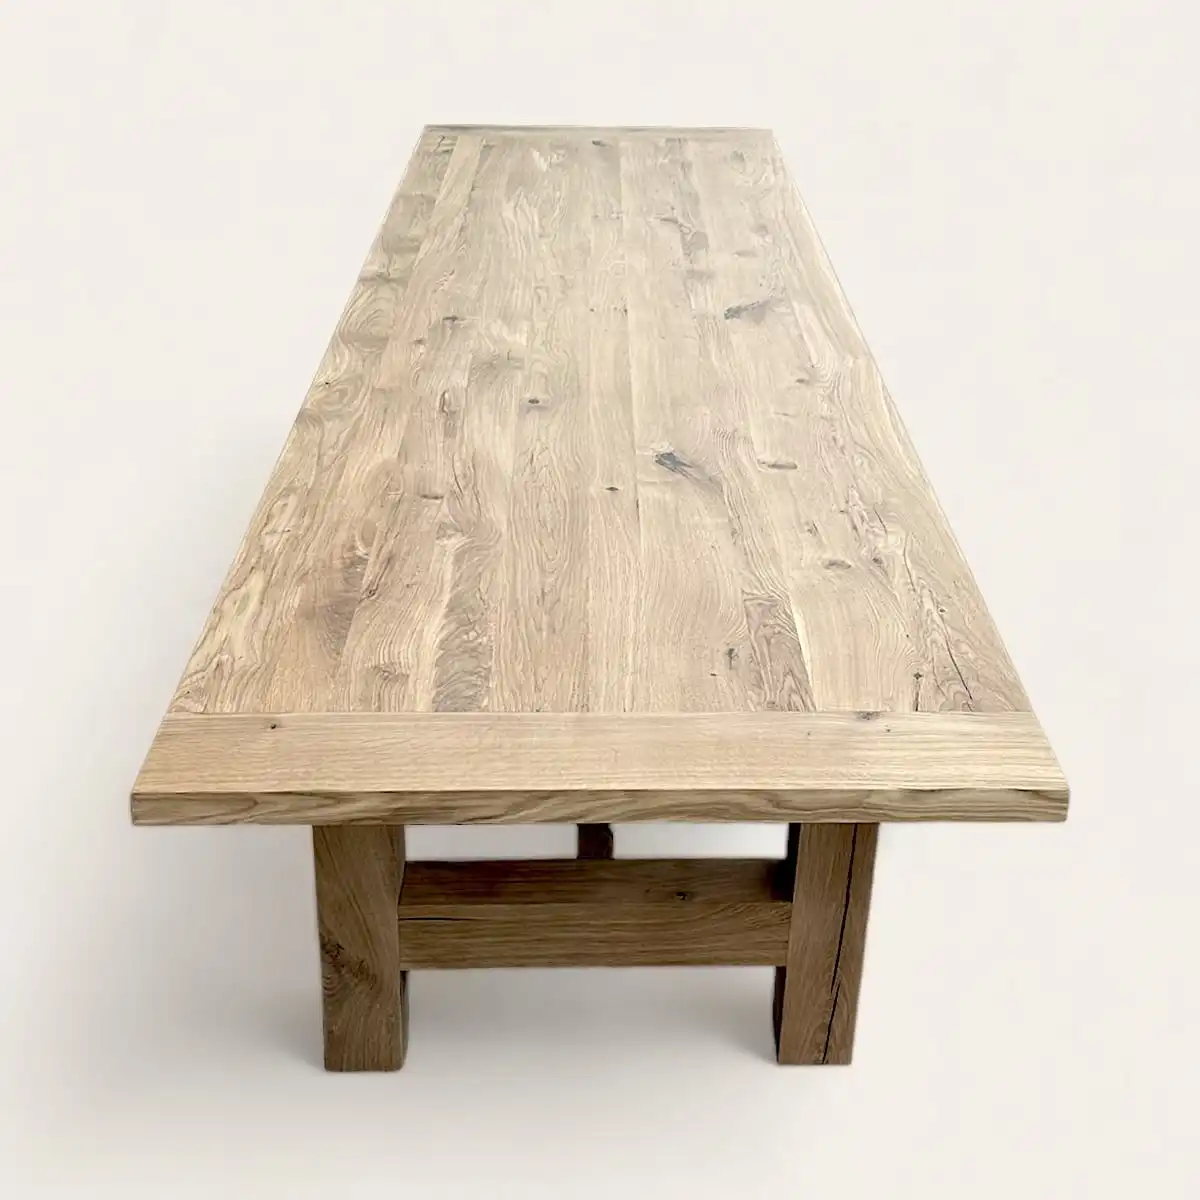  Une table à manger esprit campagne en bois massif sur fond blanc. 